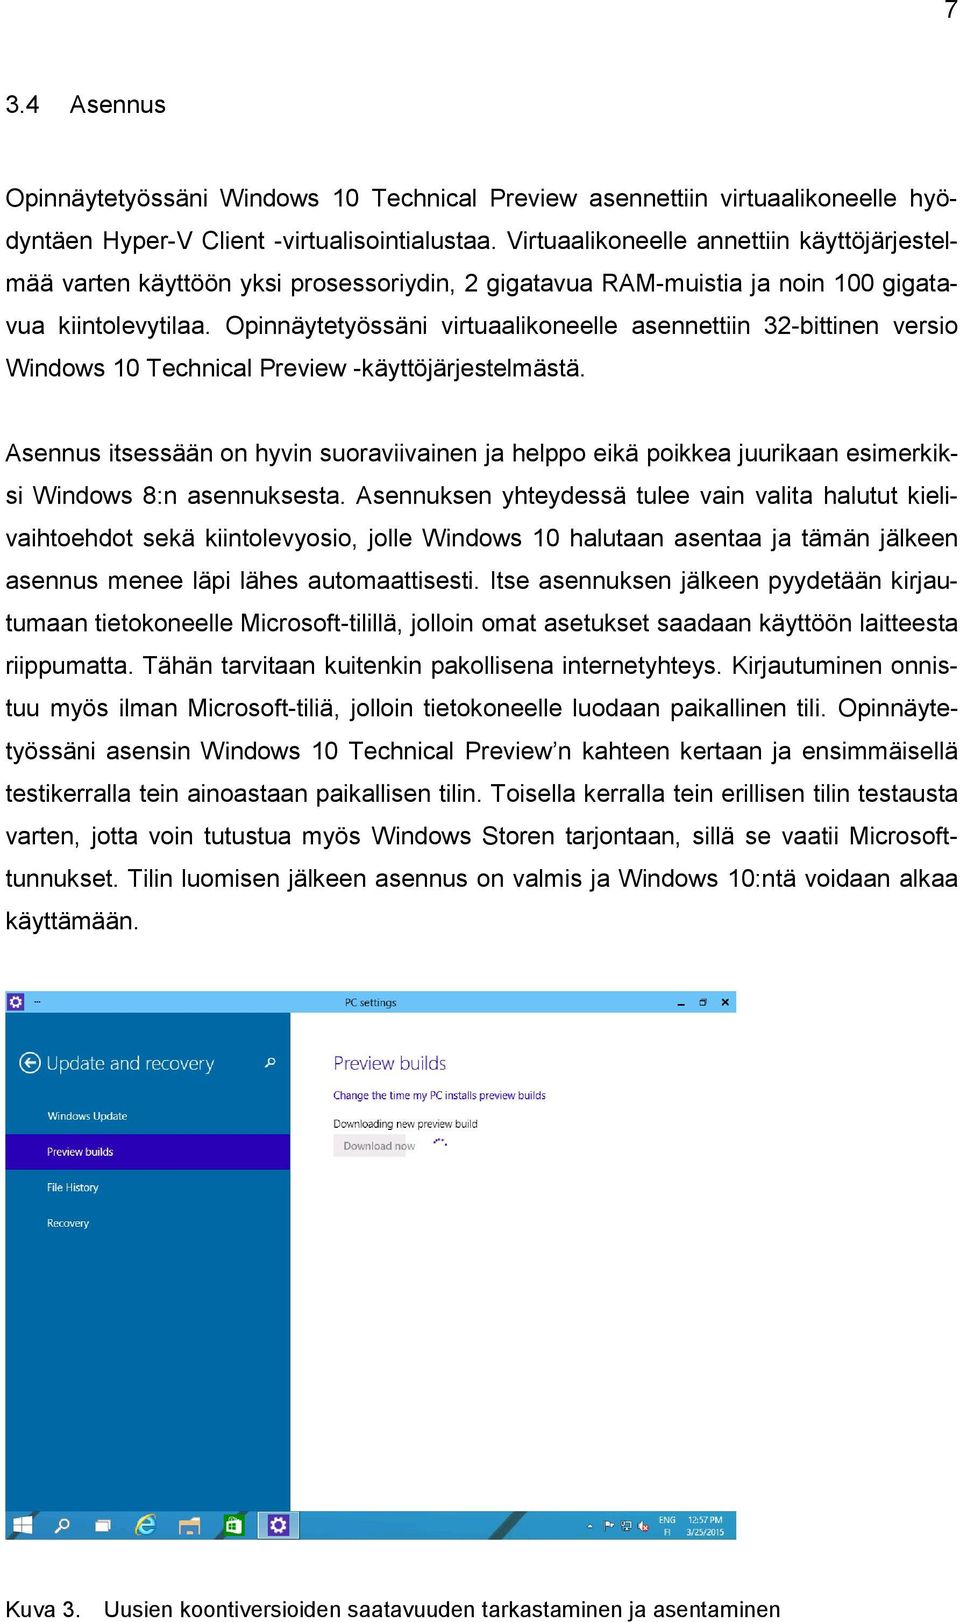 Opinnäytetyössäni virtuaalikoneelle asennettiin 32-bittinen versio Windows 10 Technical Preview -käyttöjärjestelmästä.